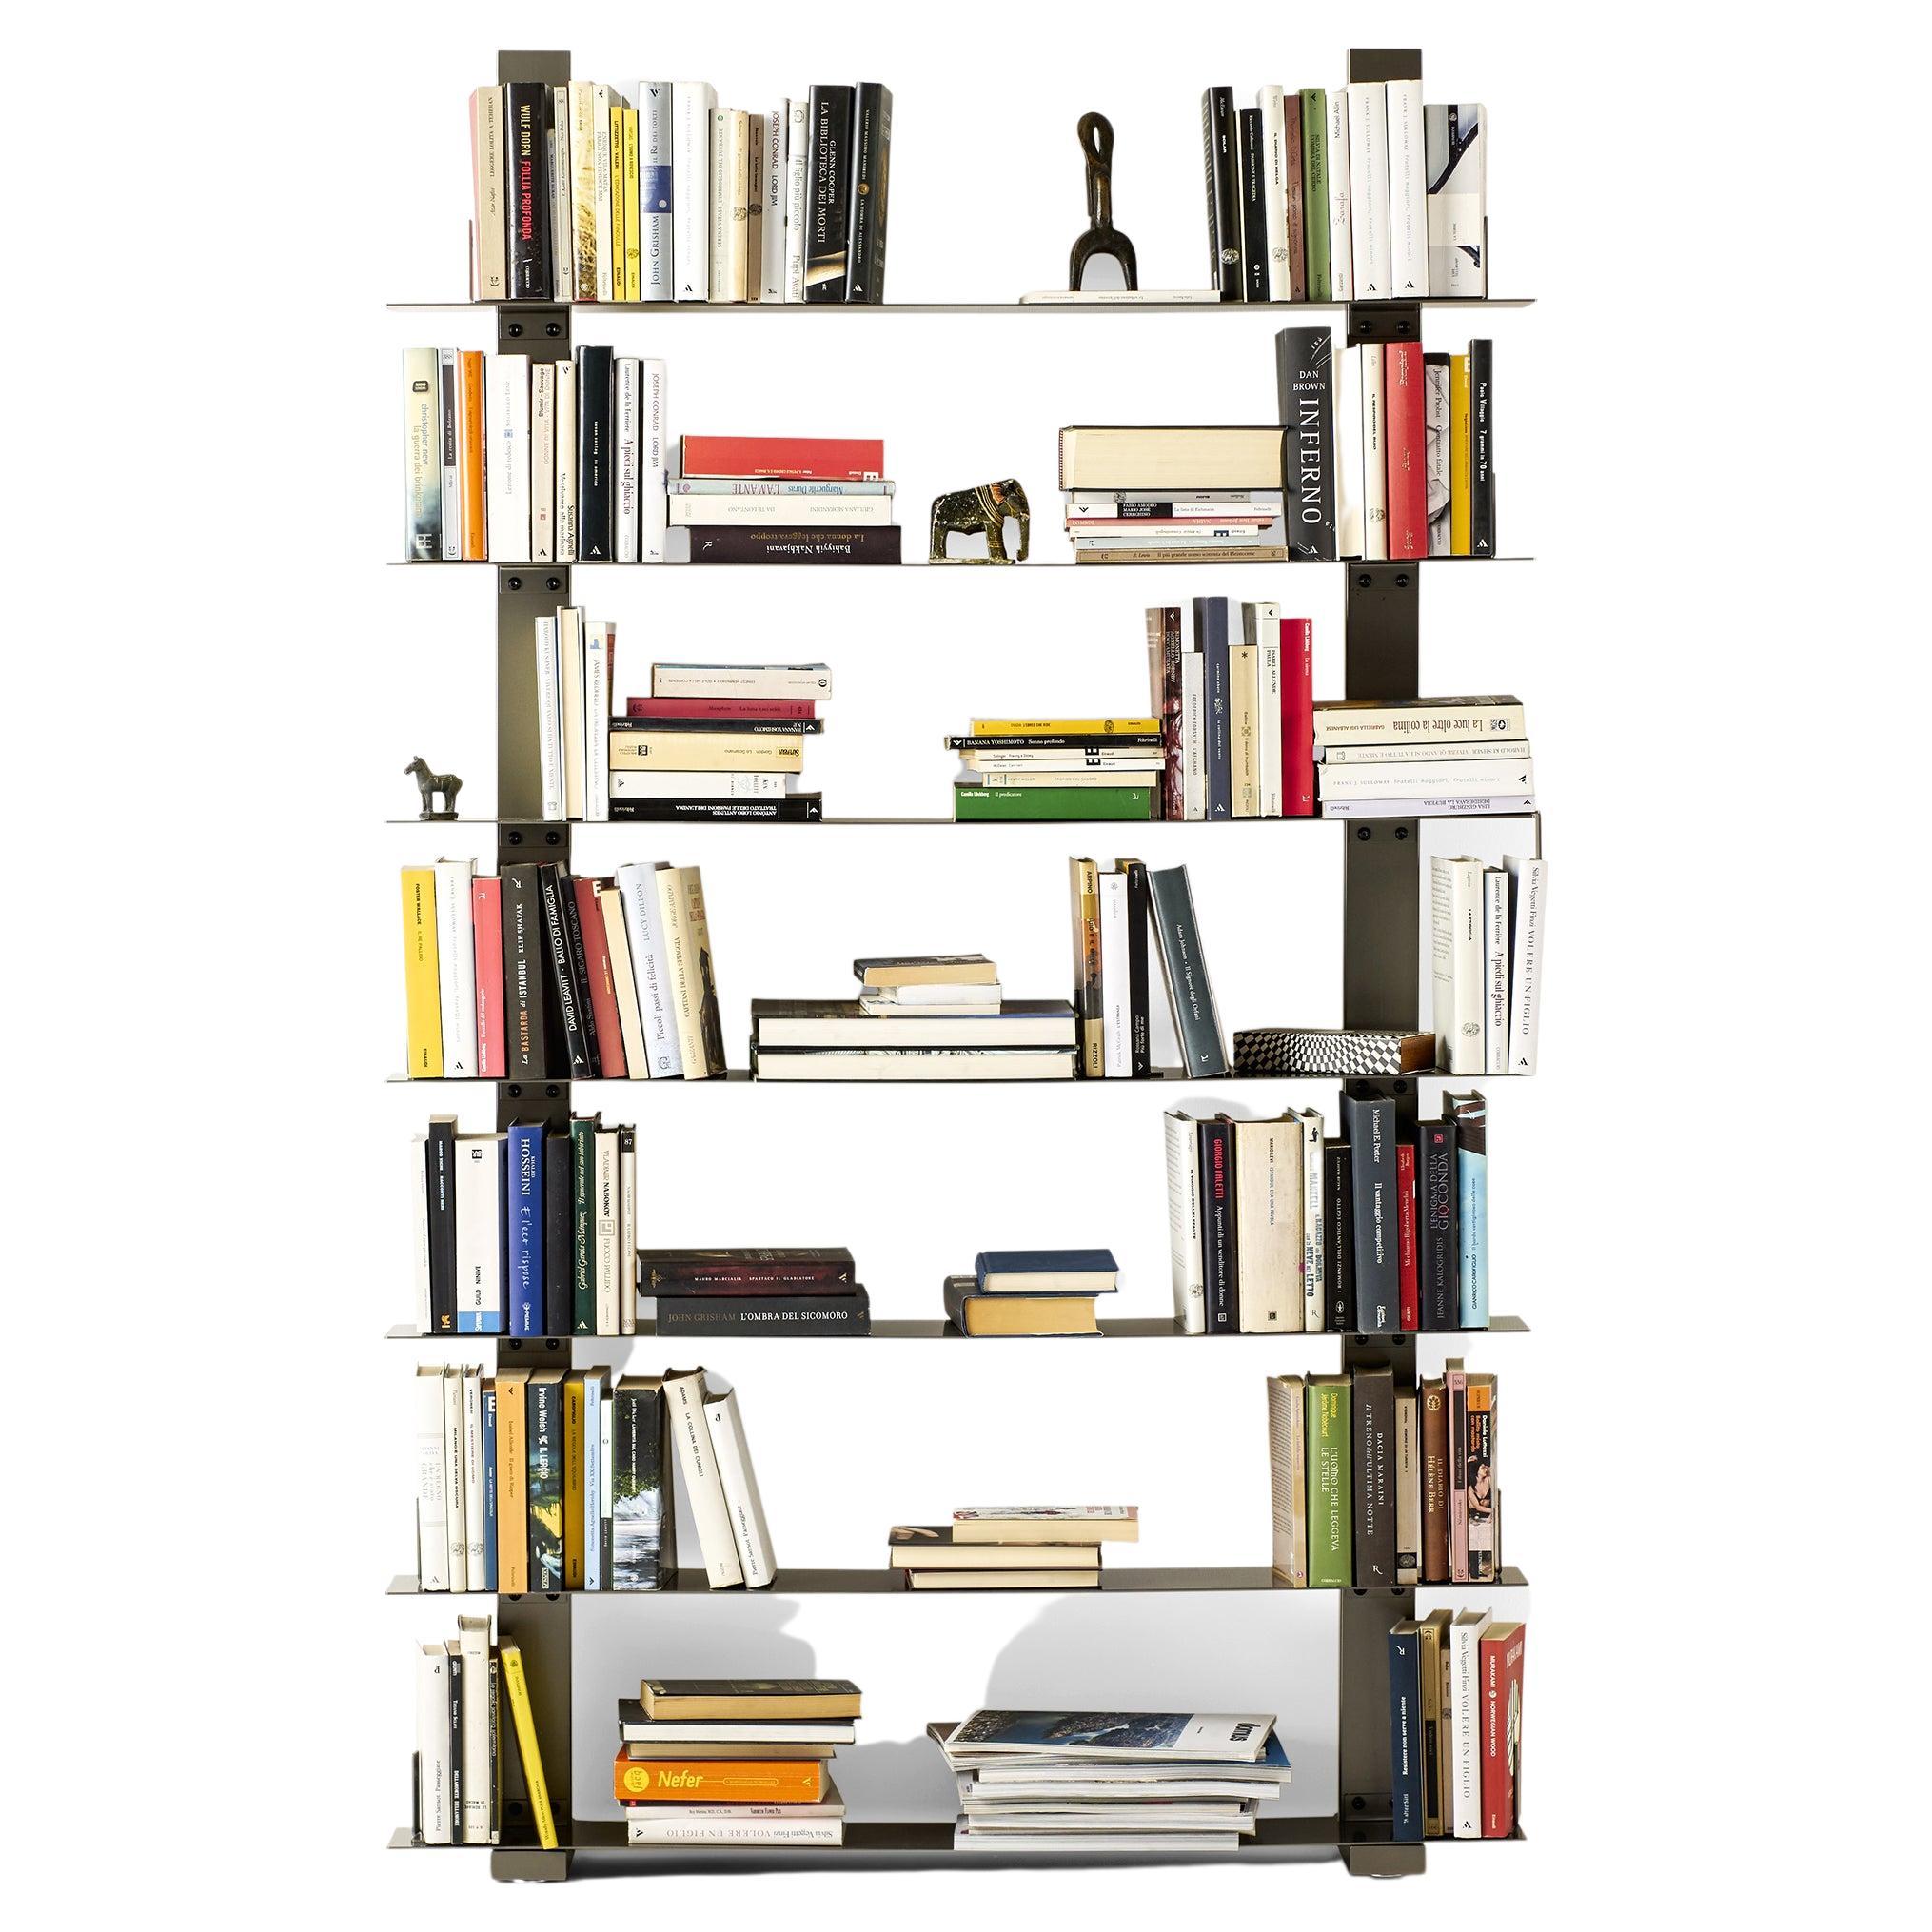 Pacifico Evolution Bookcase by Lapo Ciatti